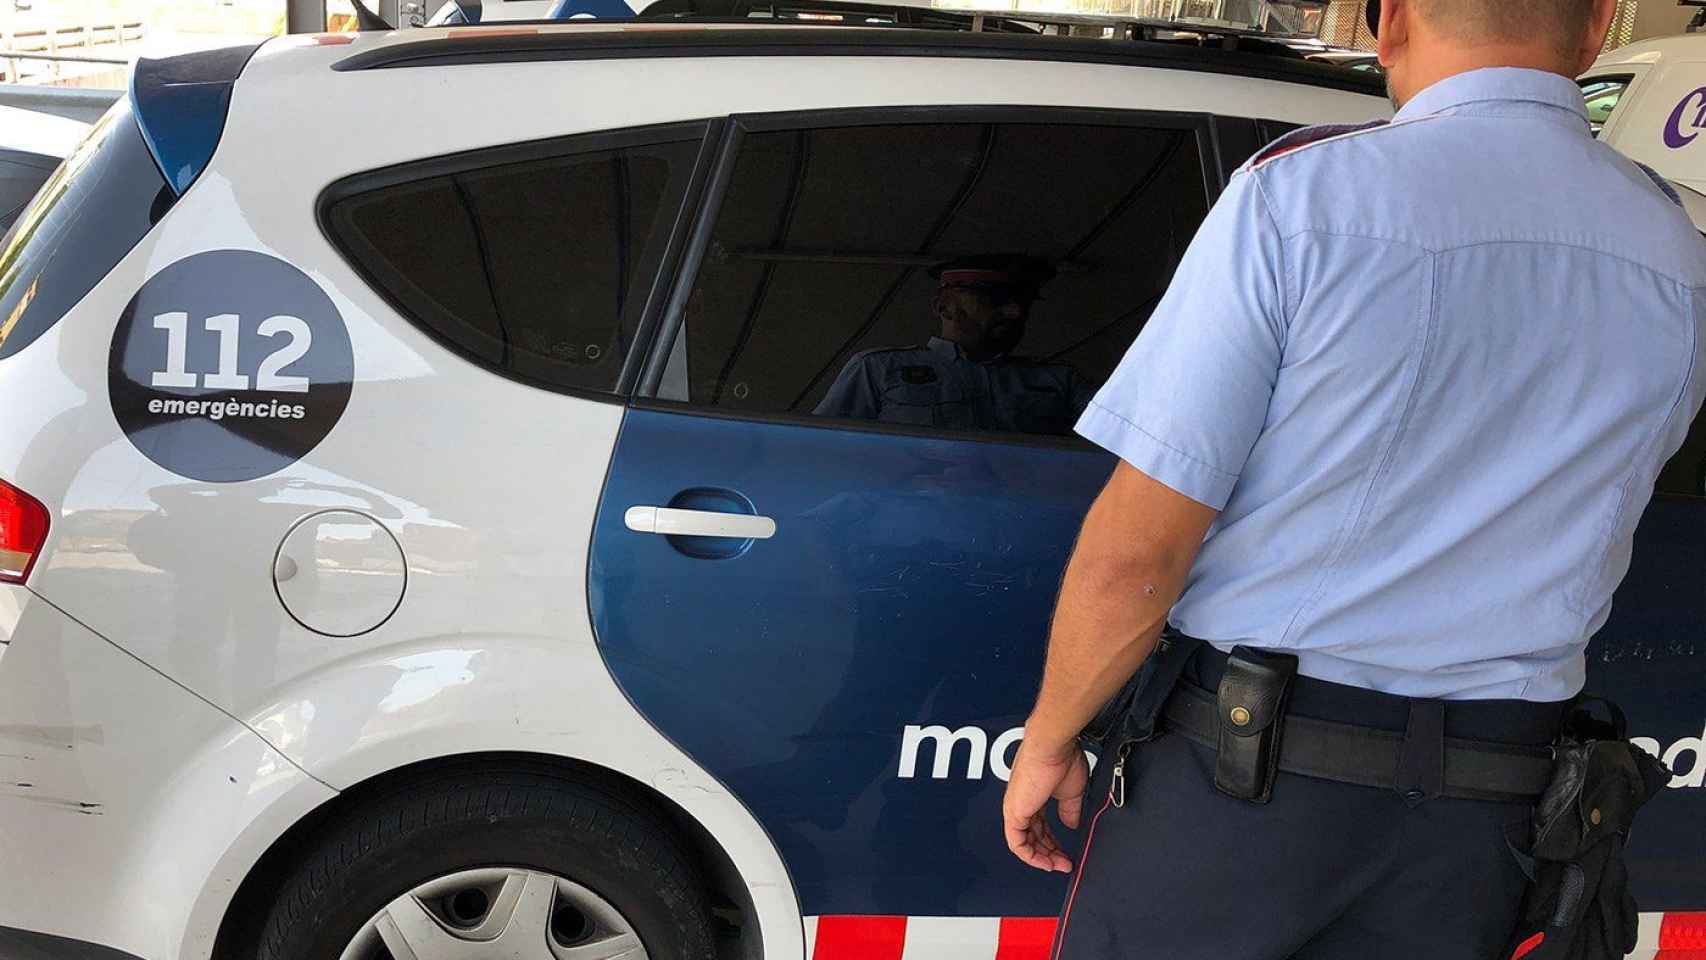 Agente y vehículo de los Mossos d'Esquadra en la Mina / MOSSOS D'ESQUADRA